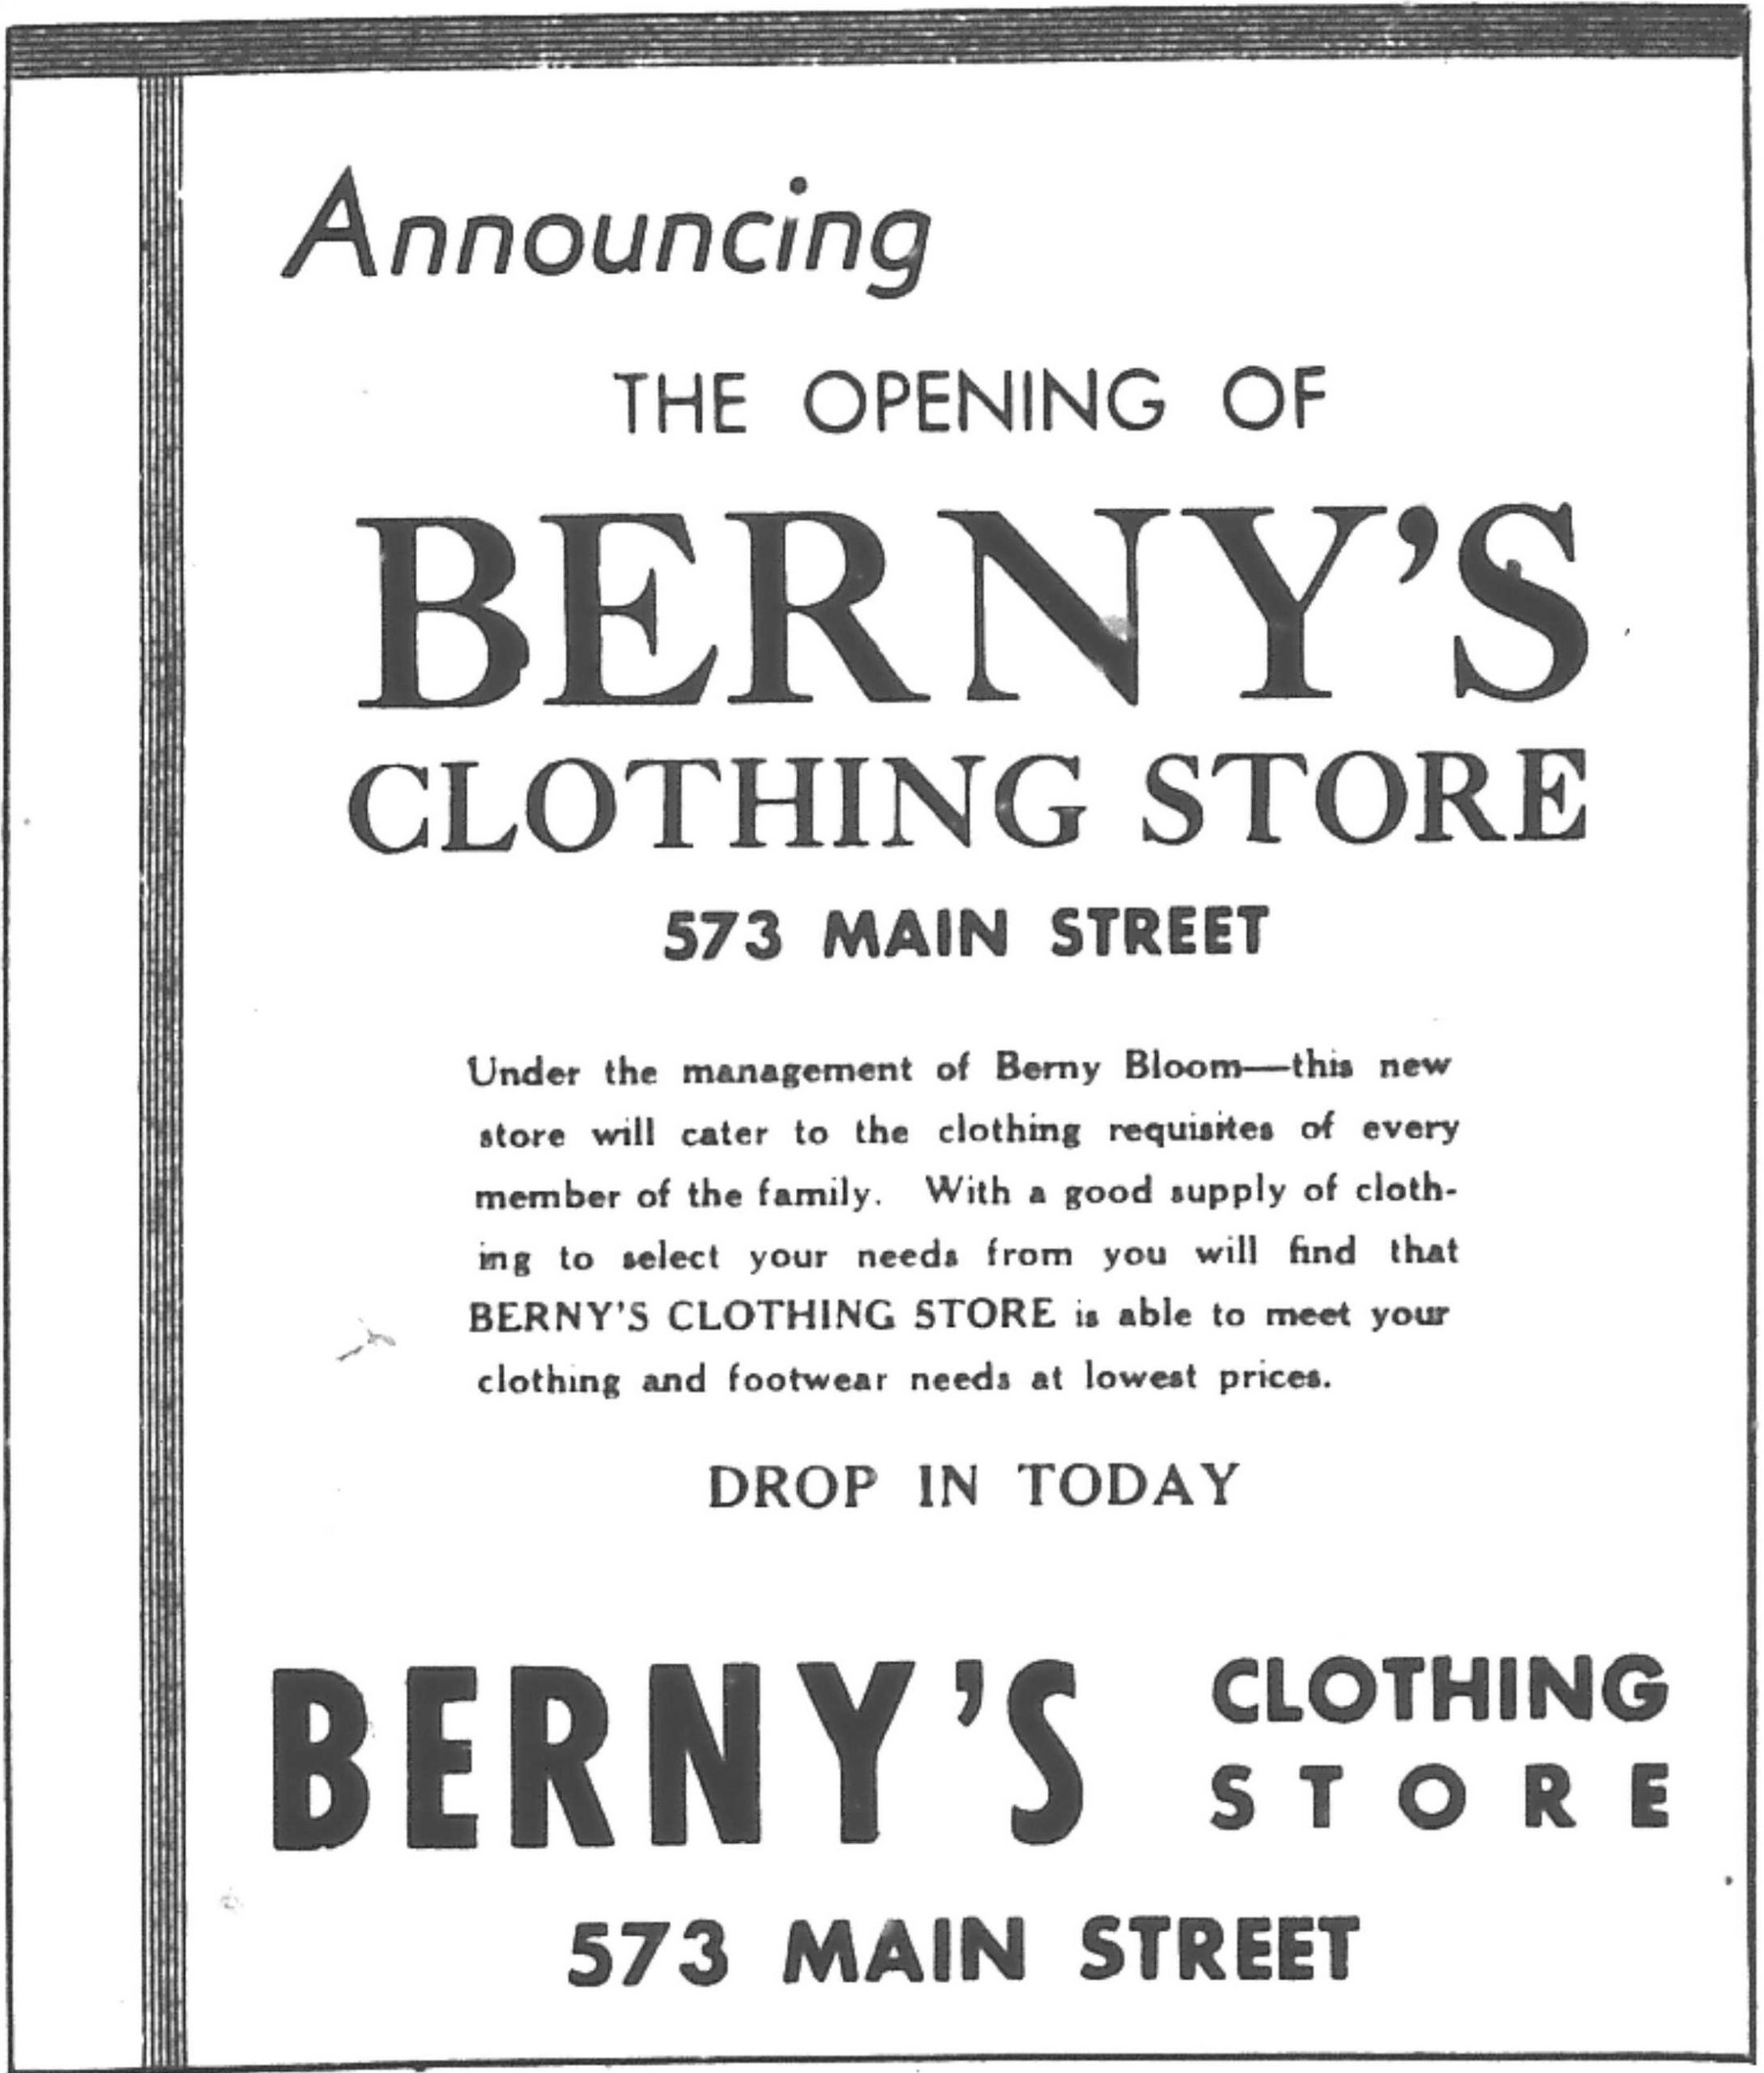 Publicité de presse intitulée « Announcing the Opening of Berny’s Clothing Store, 573 Main Street » contenant un message du propriétaire, Berny Bloom, invitant la clientèle à passer.